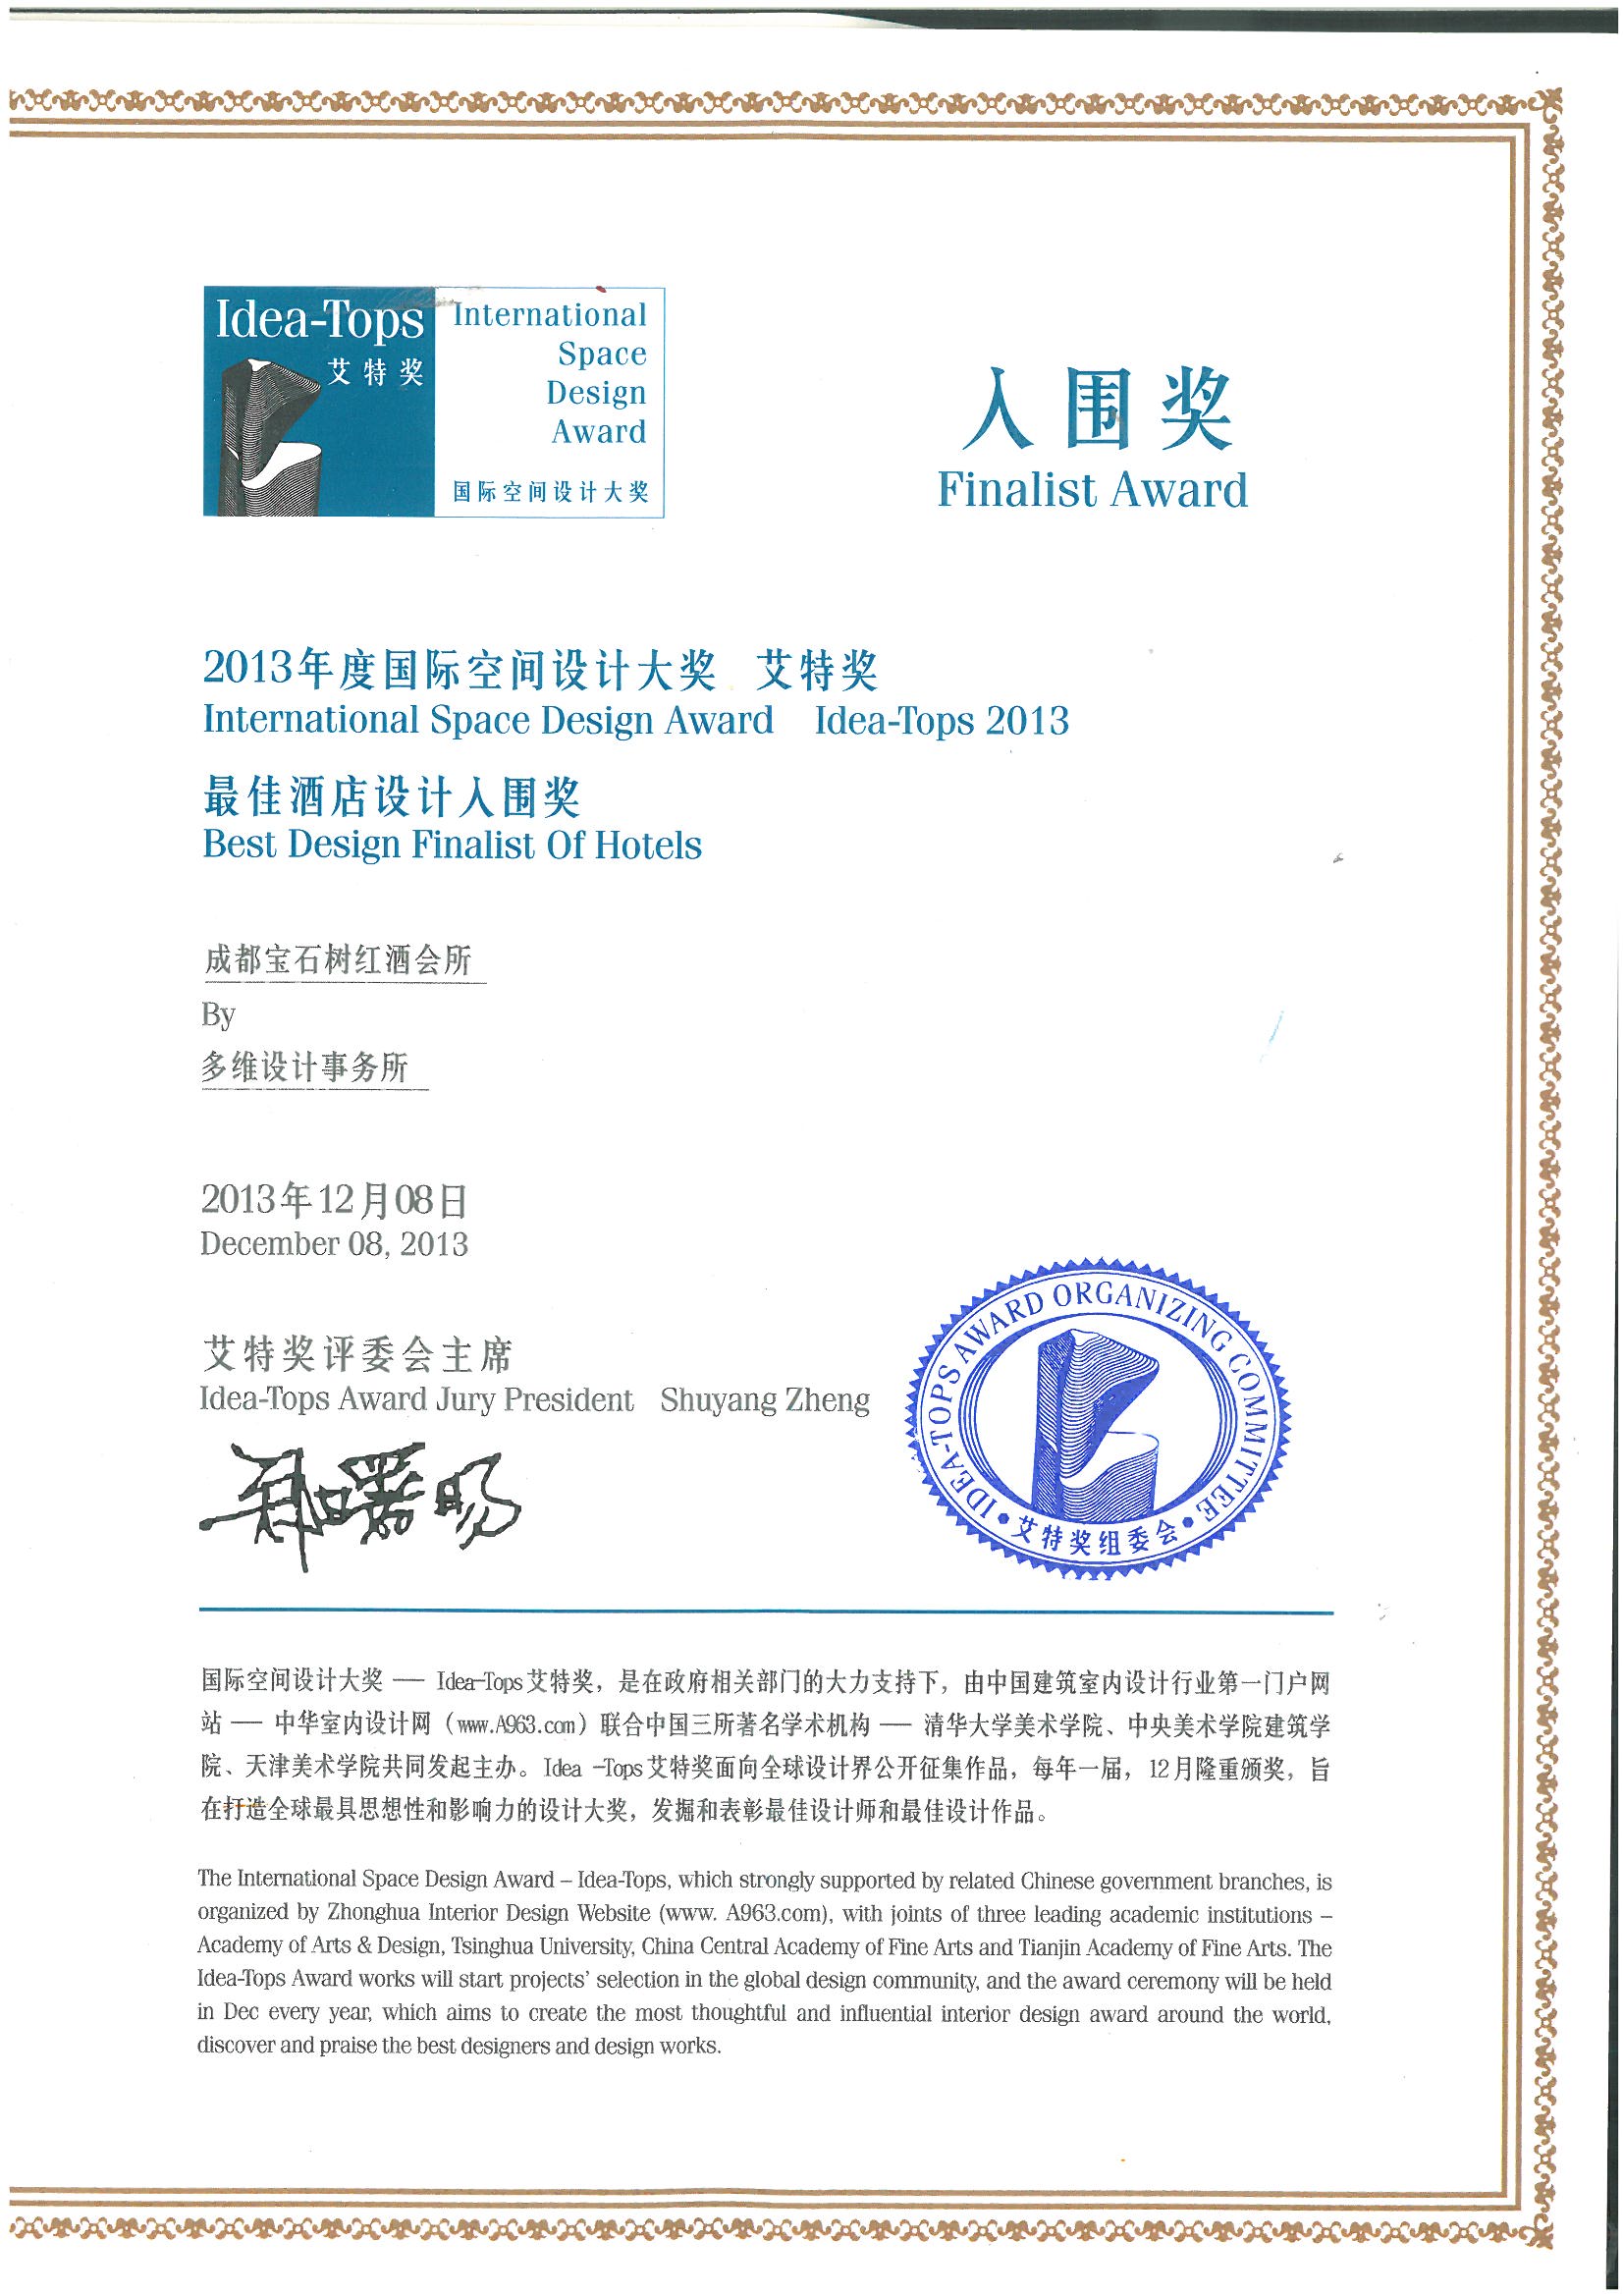 2013年度国际空间设计大奖艾特奖最佳酒店设计入围奖：成都宝石树红酒会所